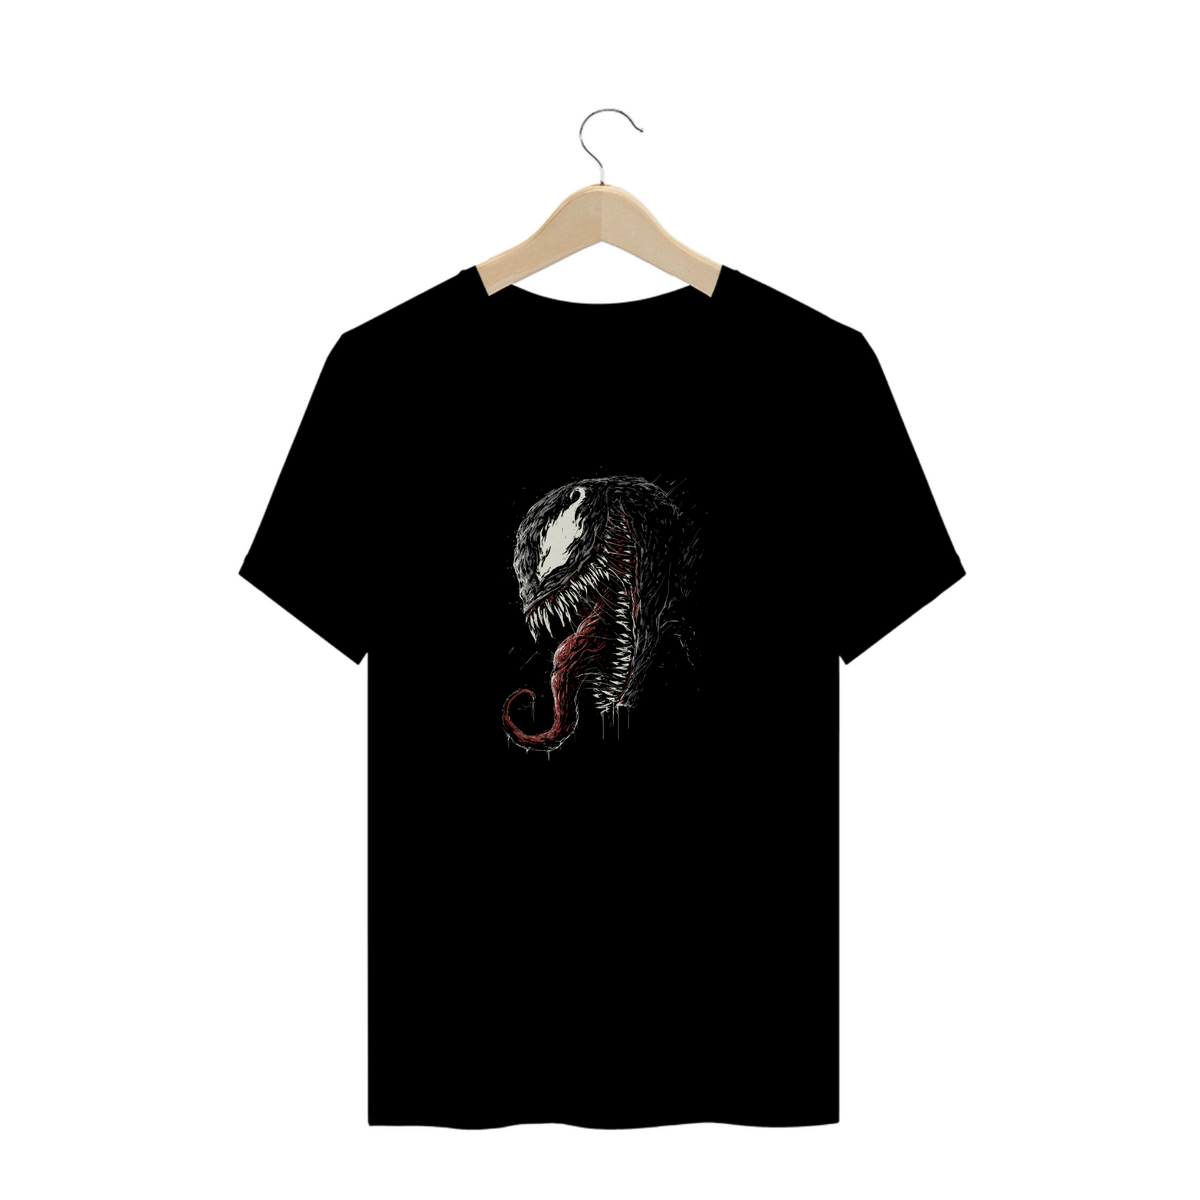 Nome do produto: Camisa Venom